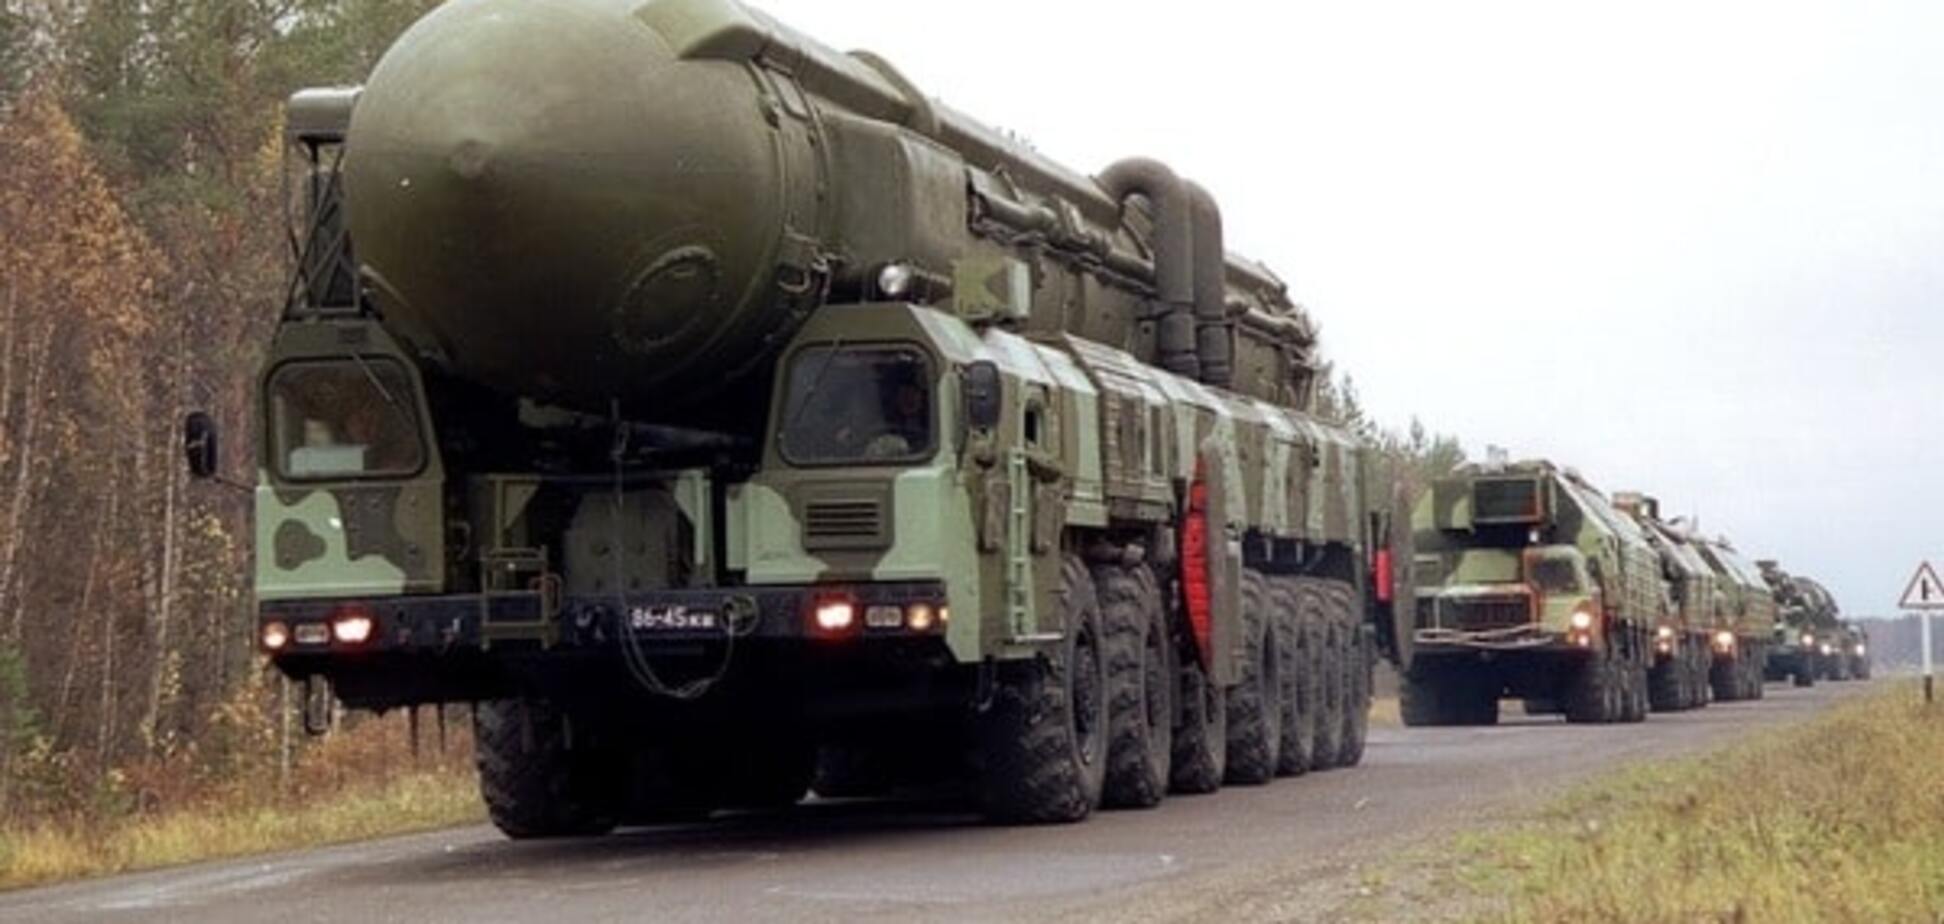 +200 боеголовок: Россия резко увеличила ядерный арсенал – Госдеп США